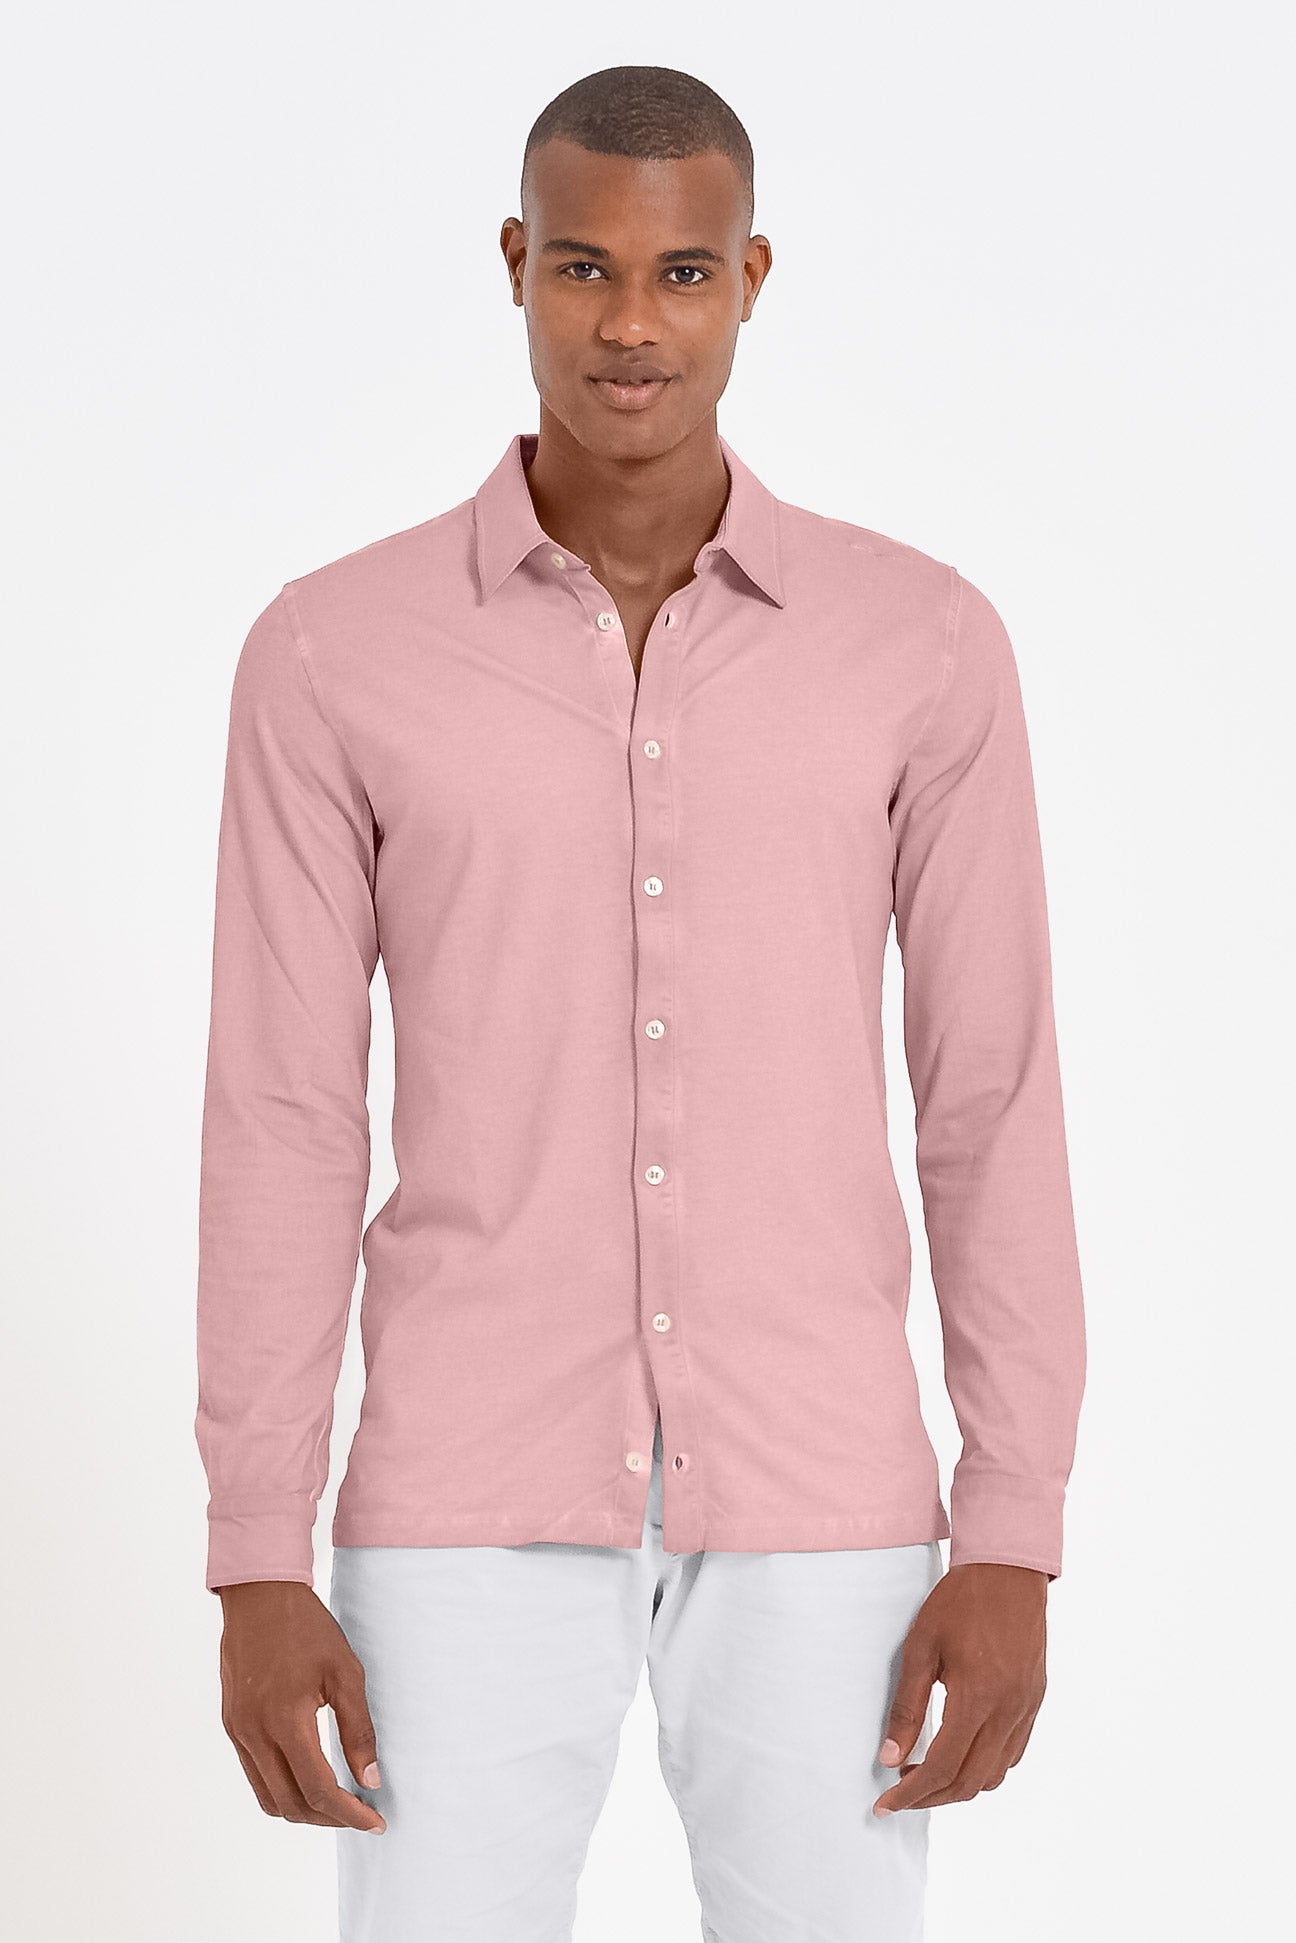 Cotton Pique Shirt - Bali